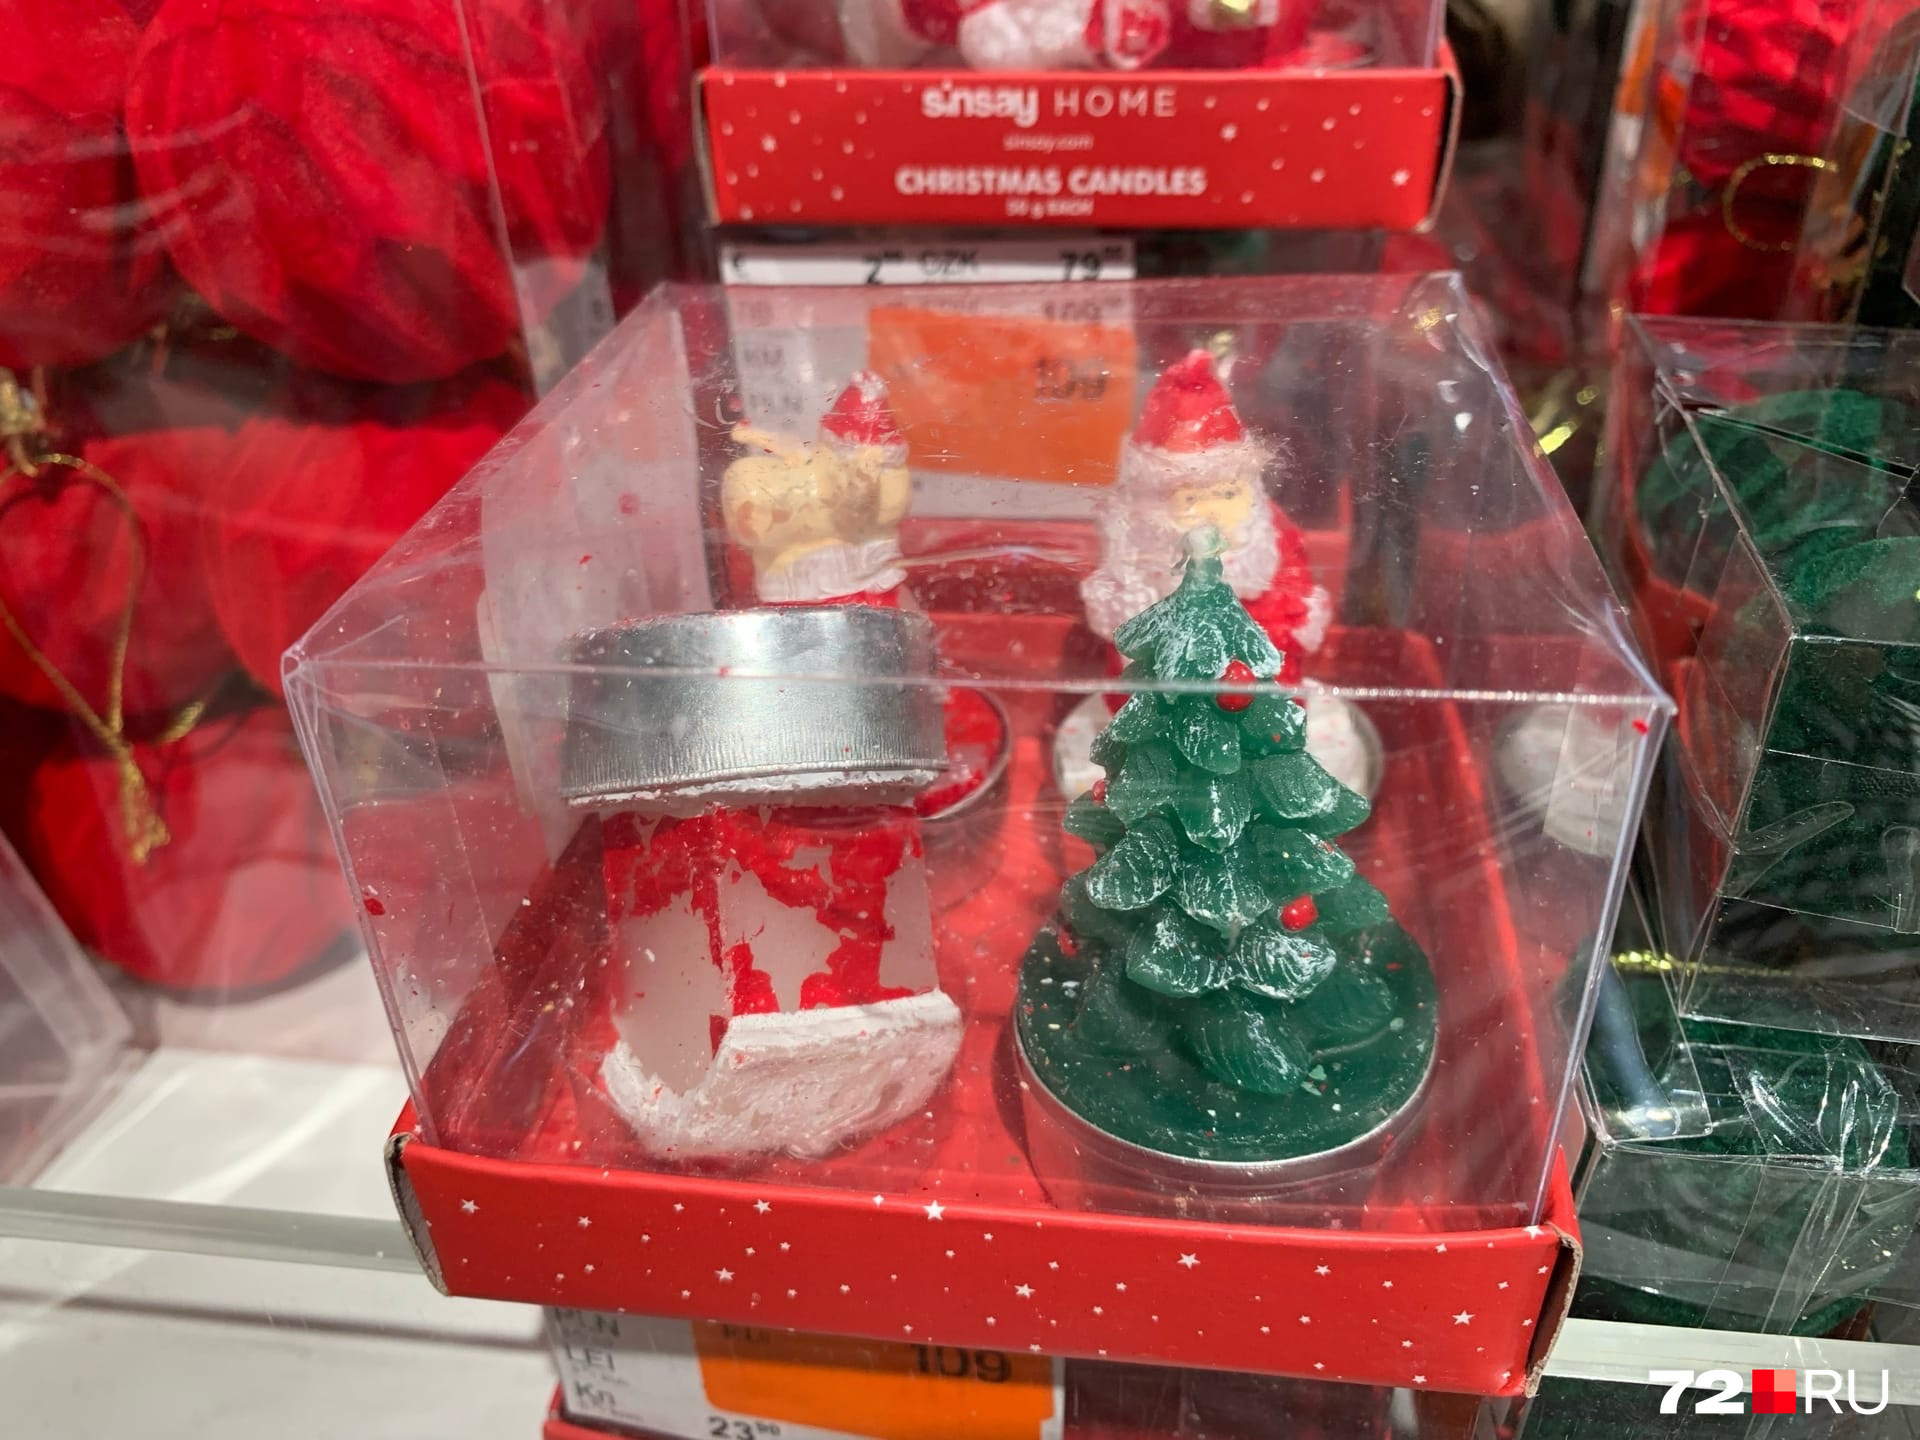 Фигурные свечки как они есть — в виде елочек, алый заснеженных домиков, Деда Мороза и других сказочных героев